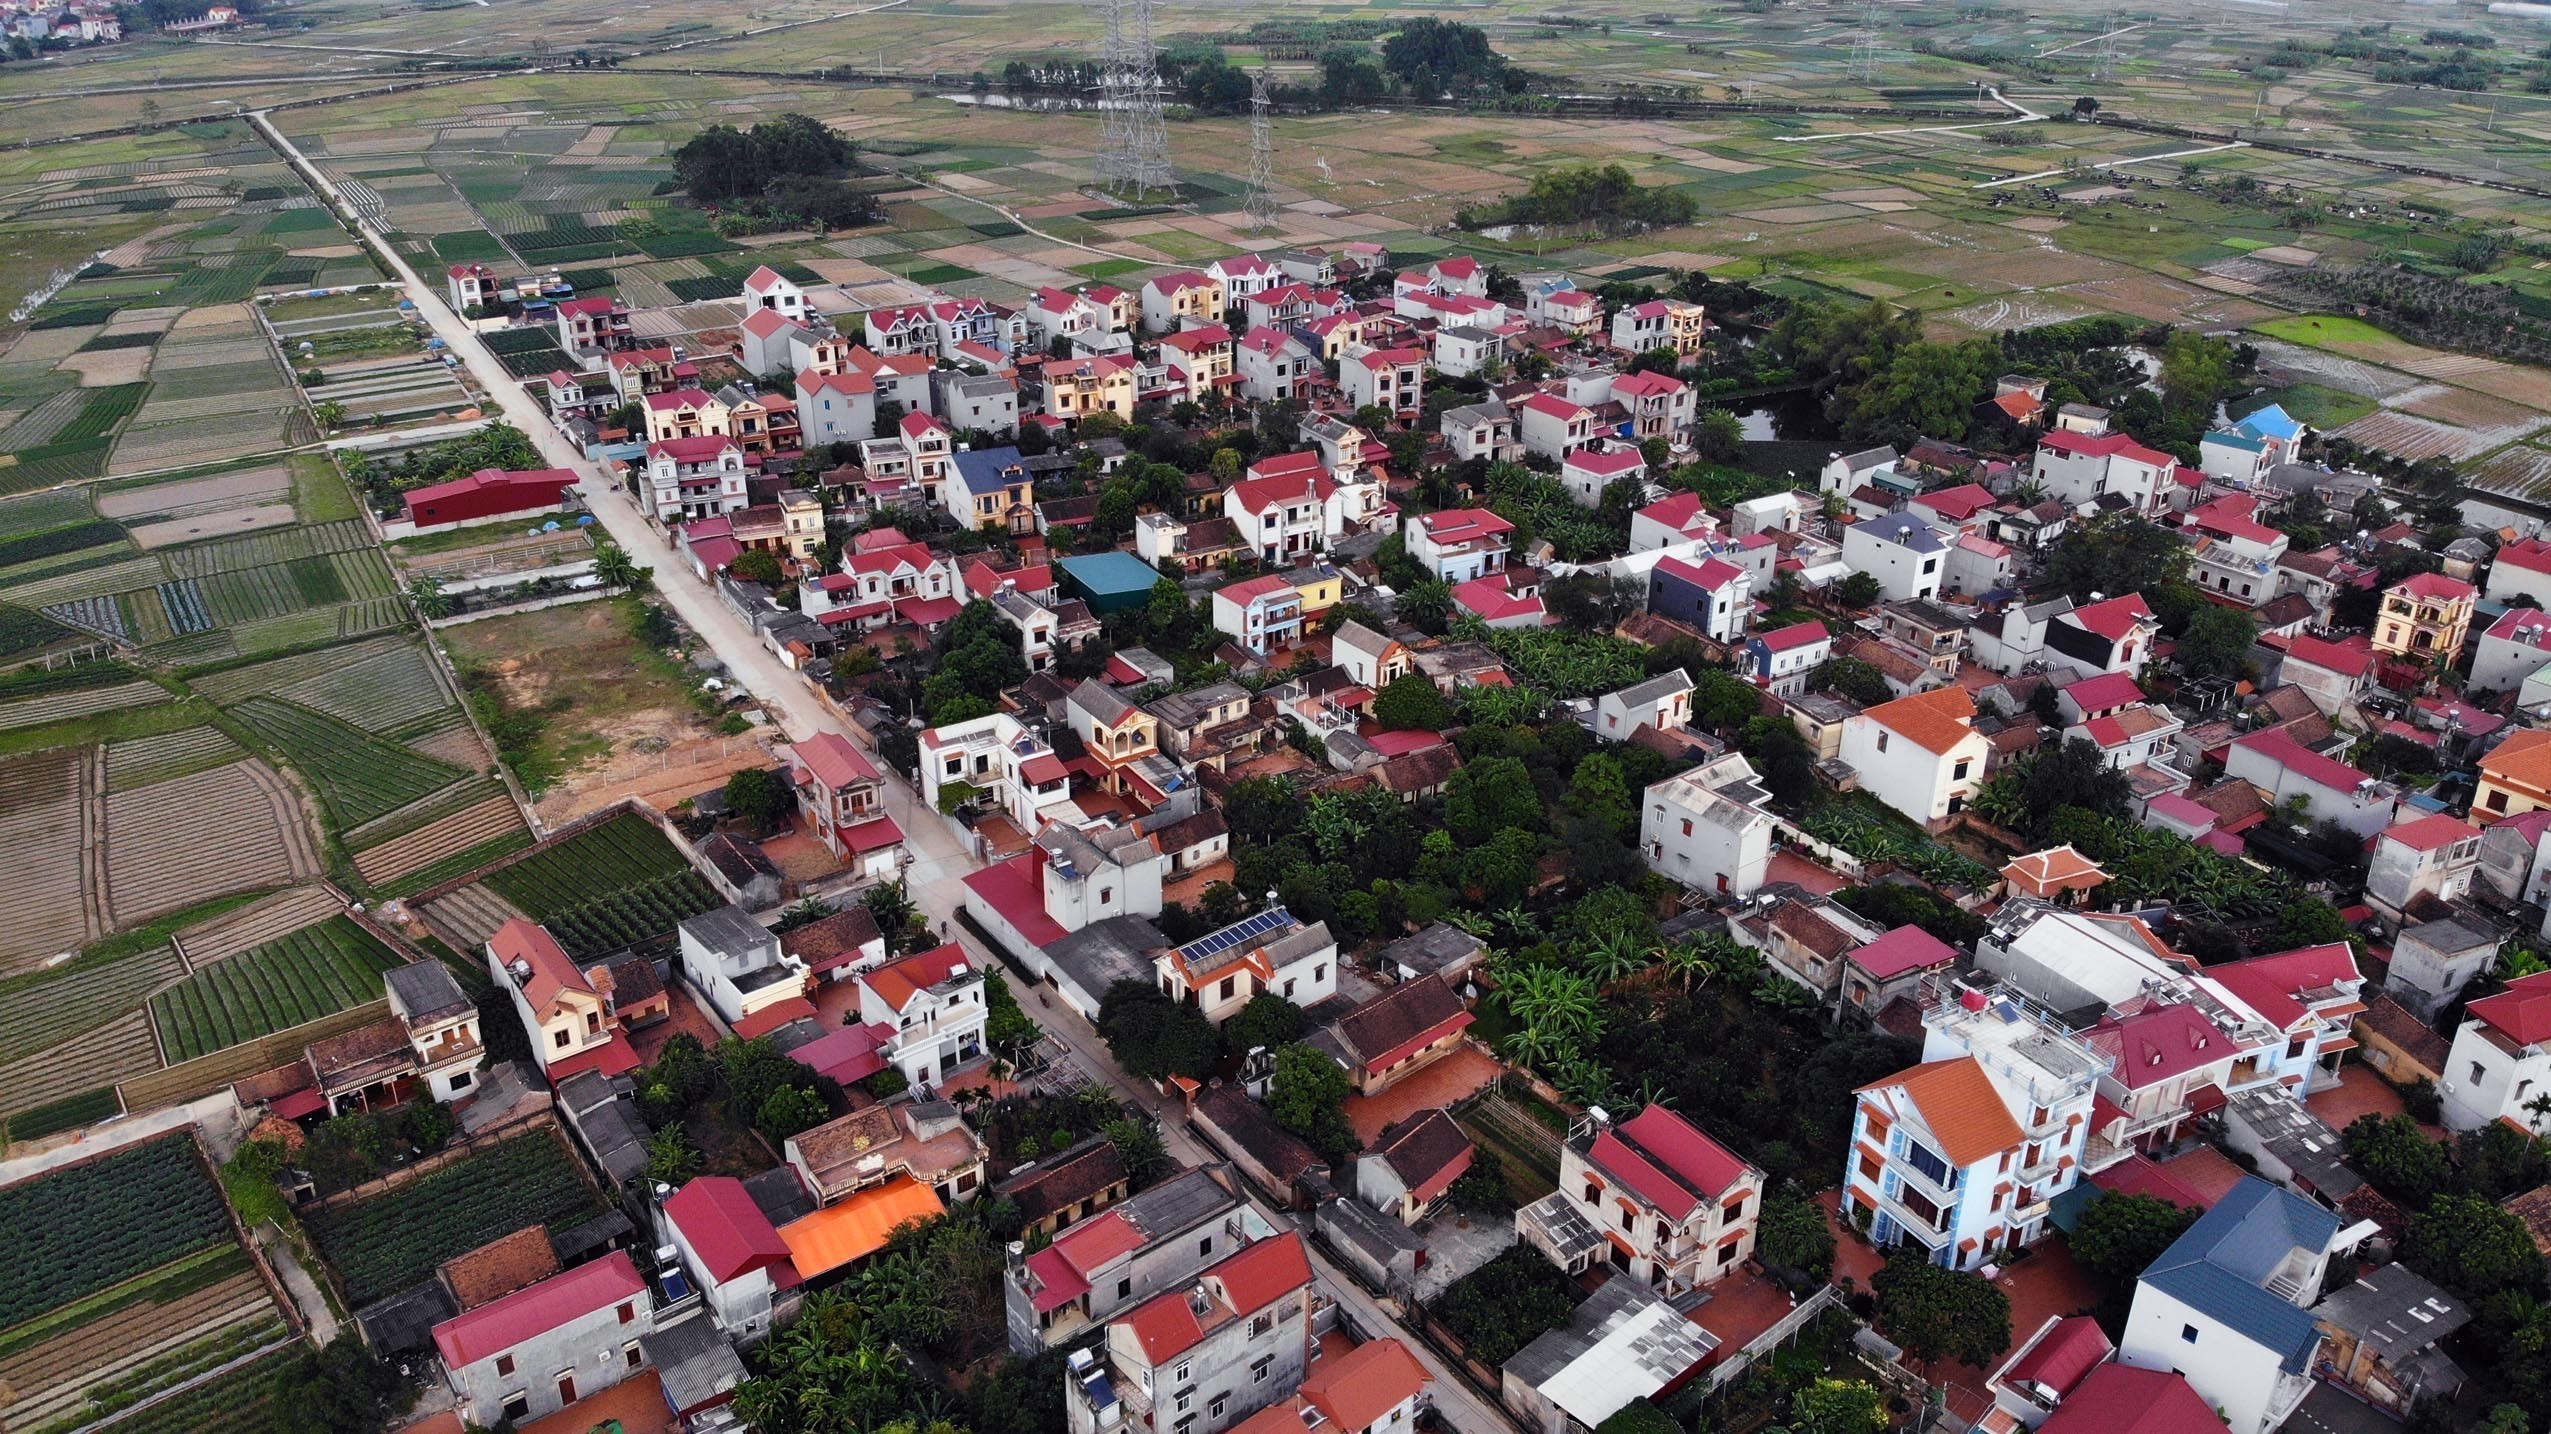 Nhà cửa khang trang, đường làng được bêtông hóa là diện mạo mới tại xã Ninh Sơn, huyện Việt Yên (Bắc Giang) sau khi triển khai phong trào thi đua xây dựng nông thôn mới. (Ảnh: Danh Lam/TTXVN)